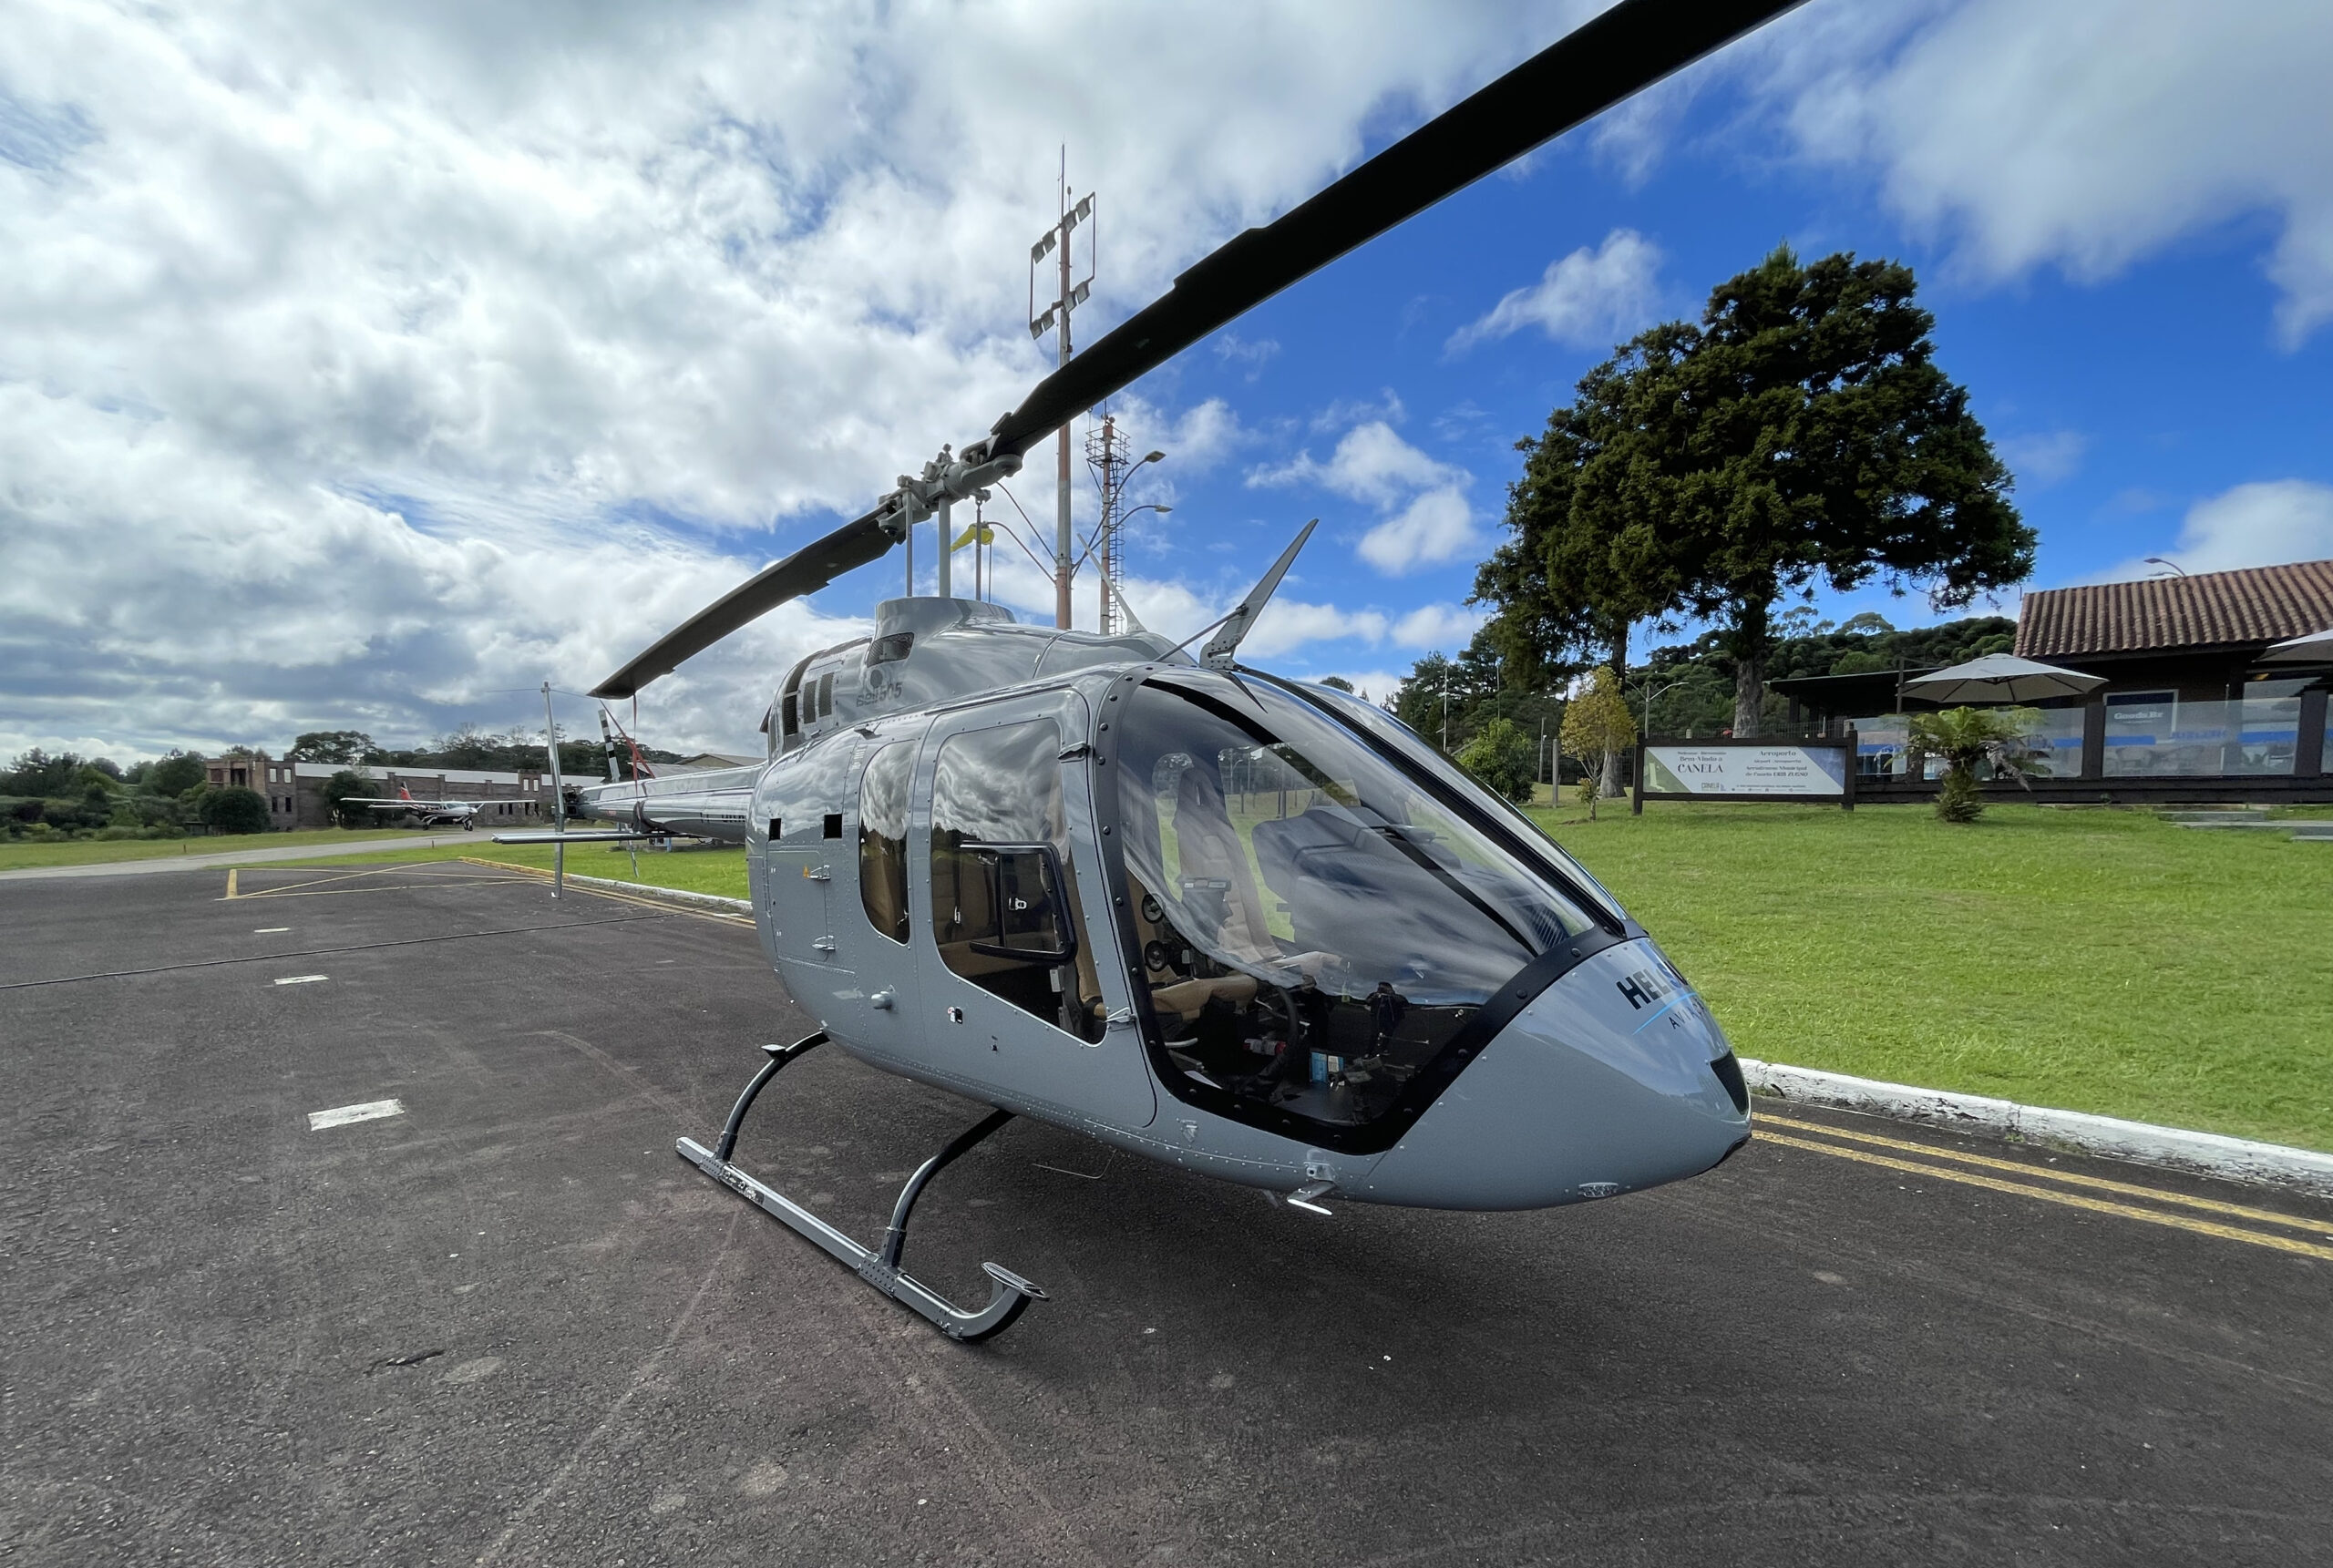 Helisul Voo Panoramico Gramado e Canela 5 scaled e1686855284799 Helisul inicia voos panorâmicos de helicóptero na Serra Gaúcha